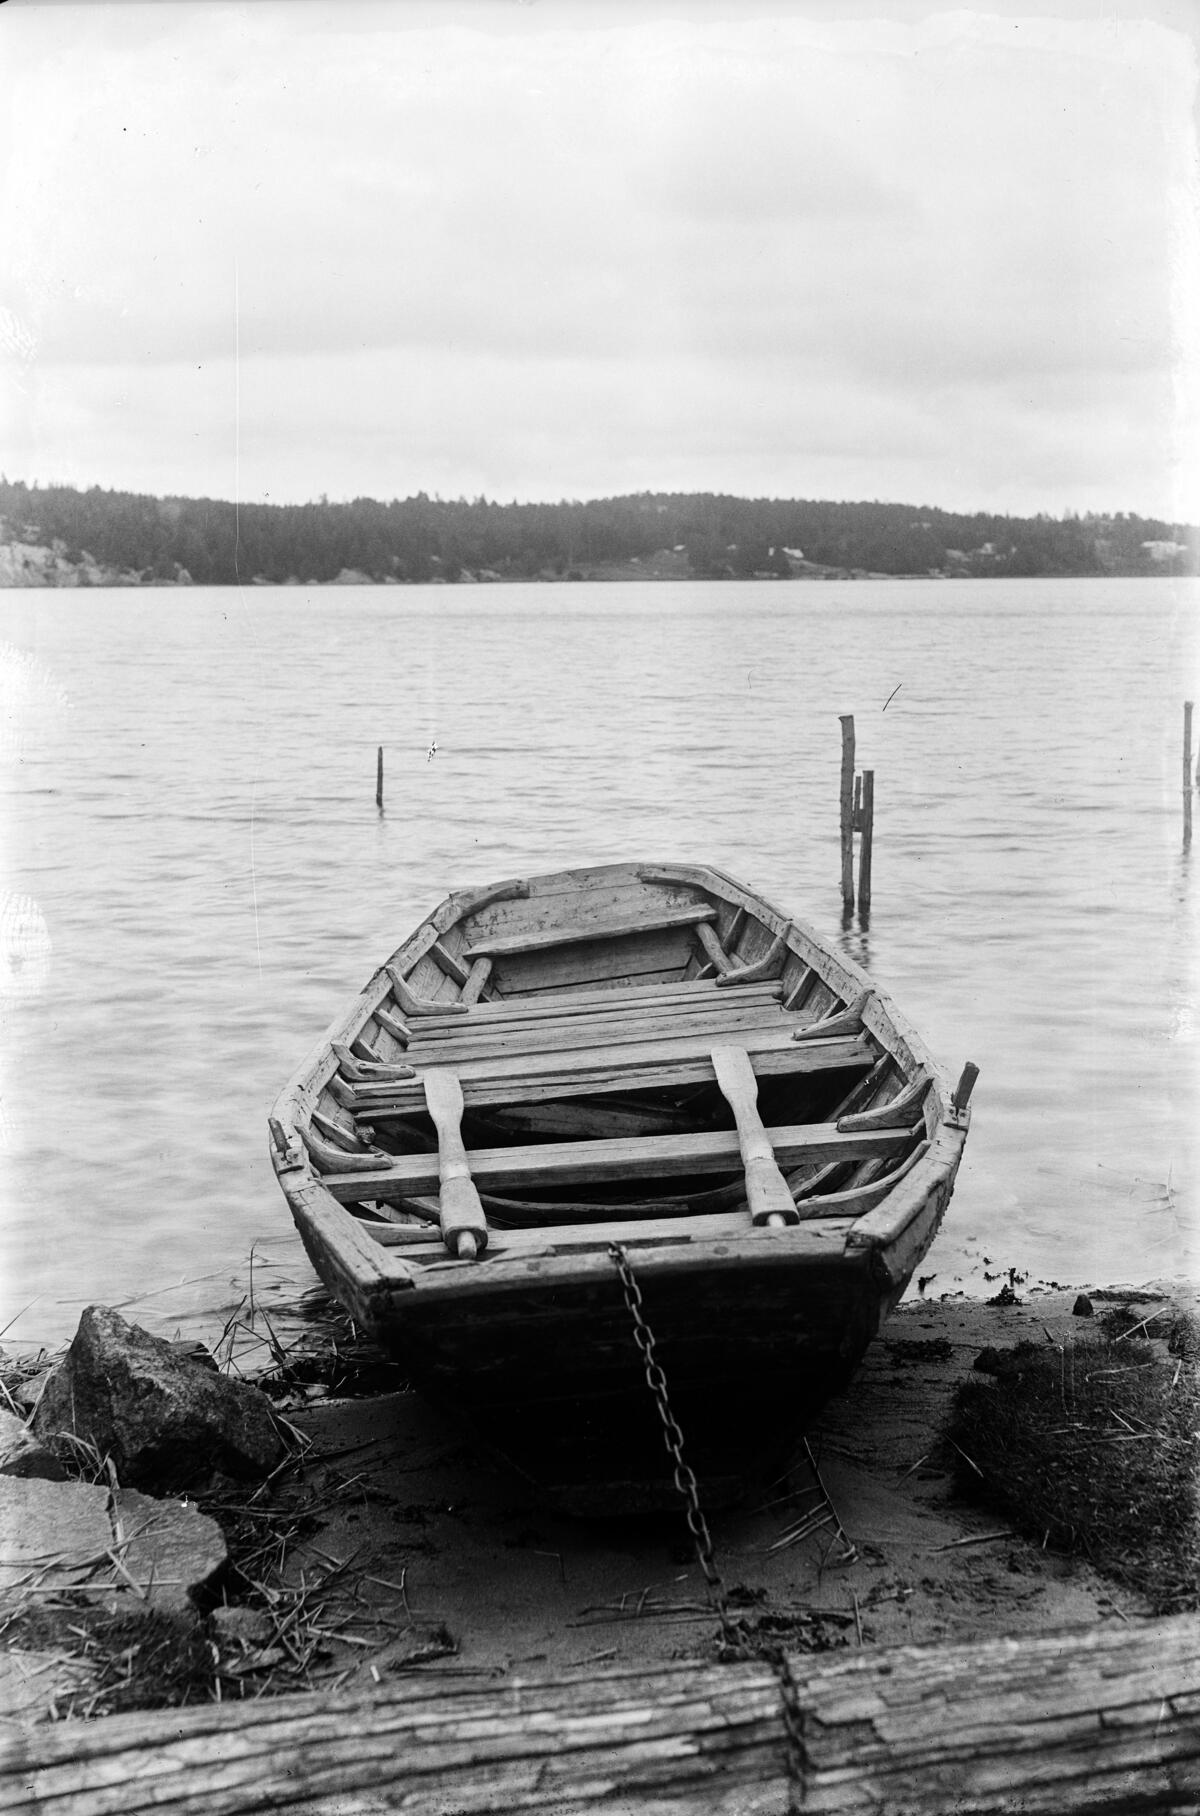 Kuvassa on nuottavene 1930-luvulta. 1500-luvun nuottaveneet olivat samantapaisia. Kuvaaja: Svenska litteratursällskapet